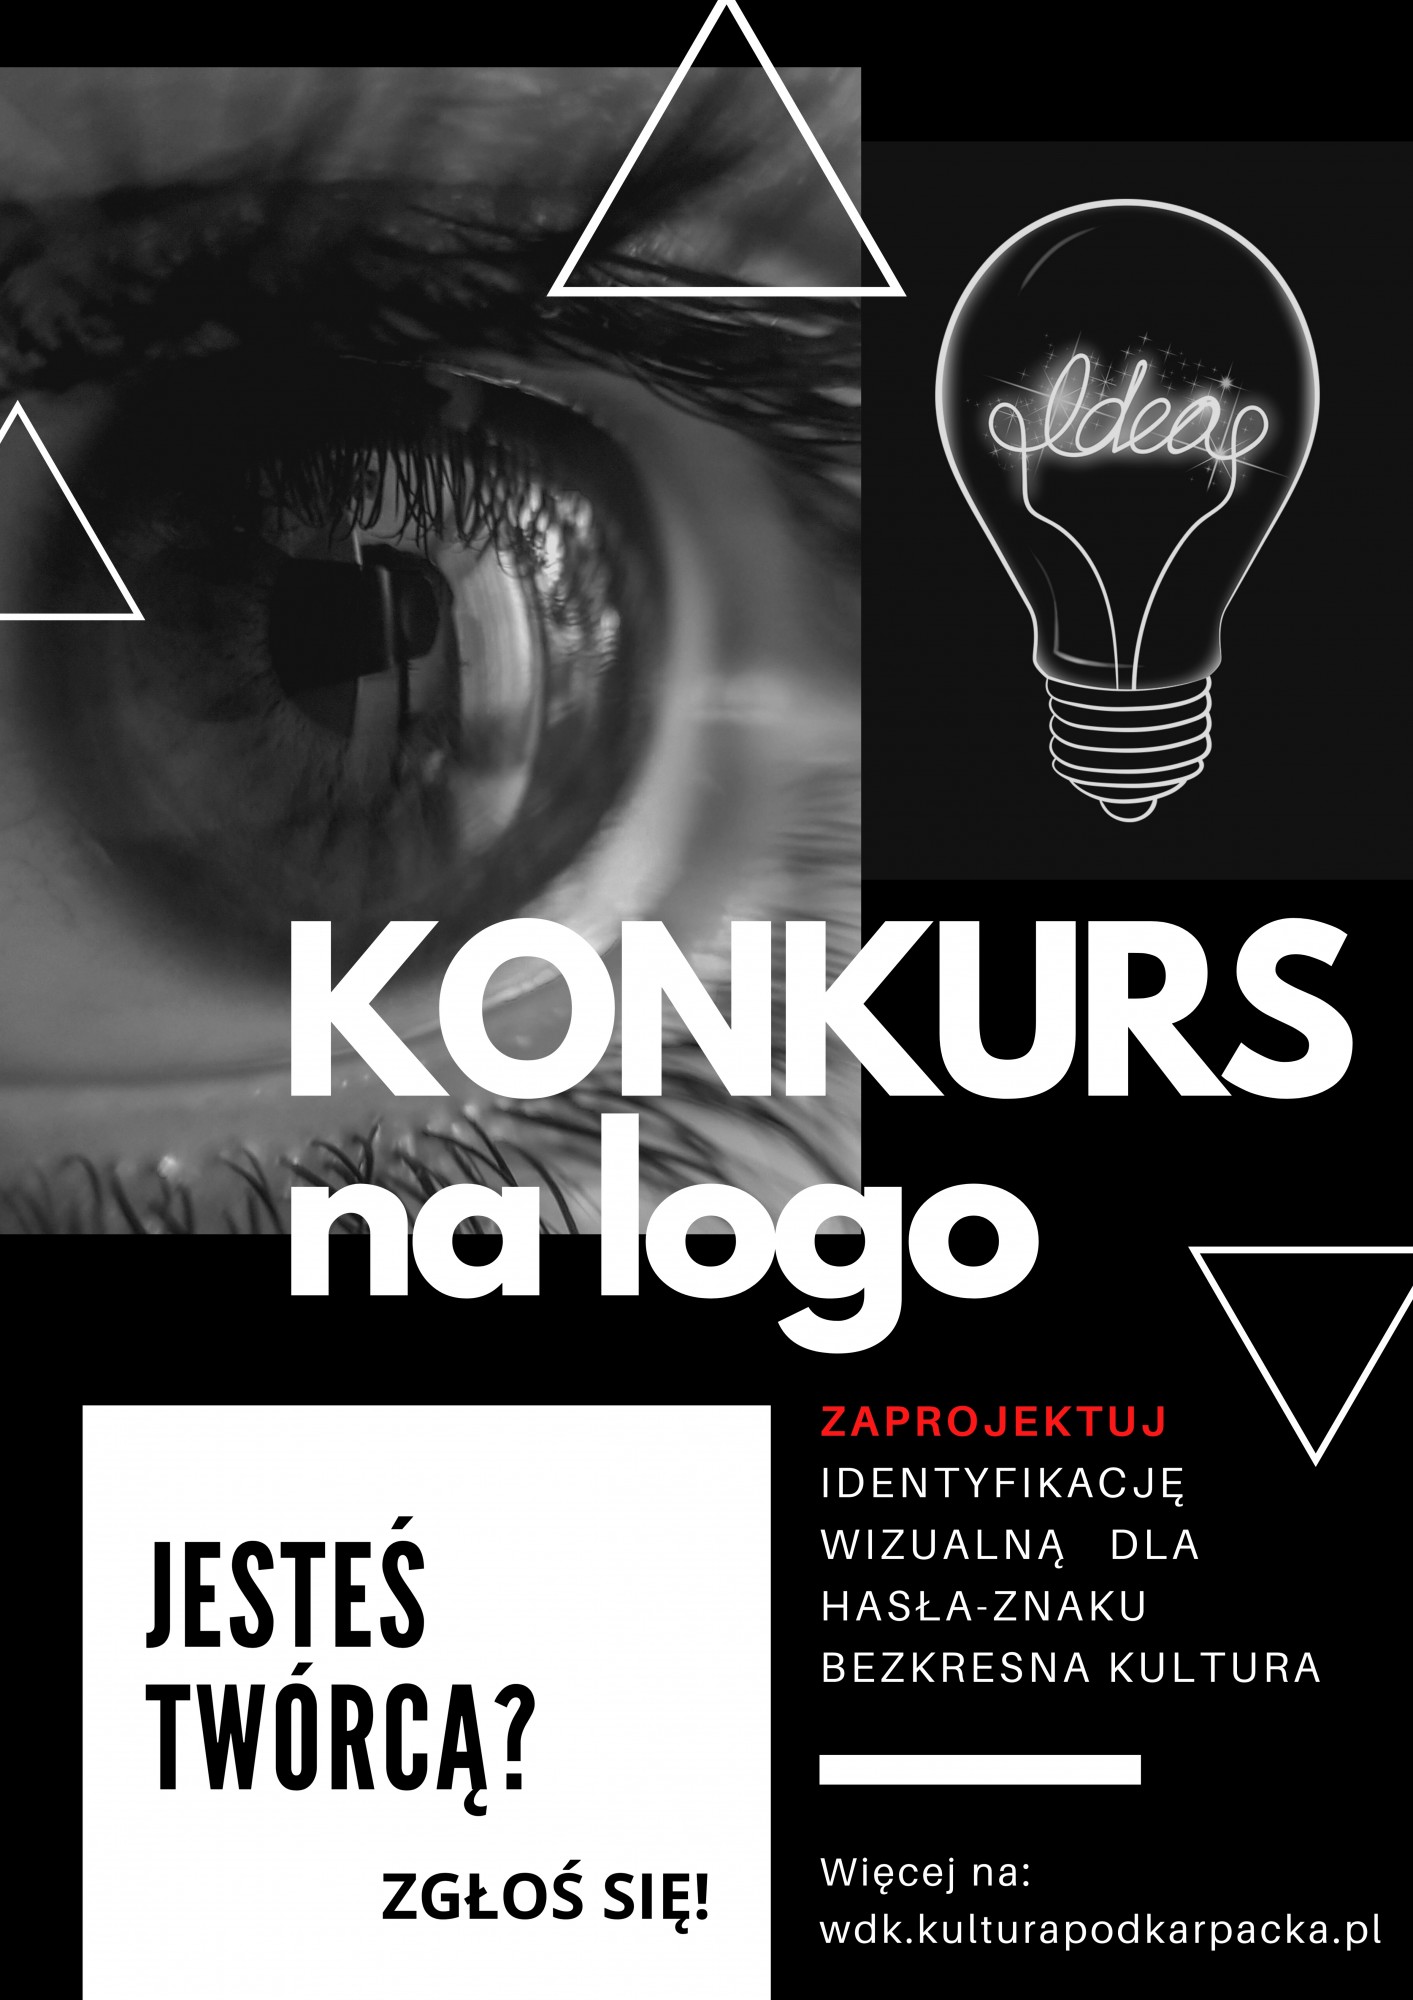 Plakat informujący o konkursie na zaprojektowanie logotypu i identyfikacji wizualnej hasła - marki Bezkresna Kultura